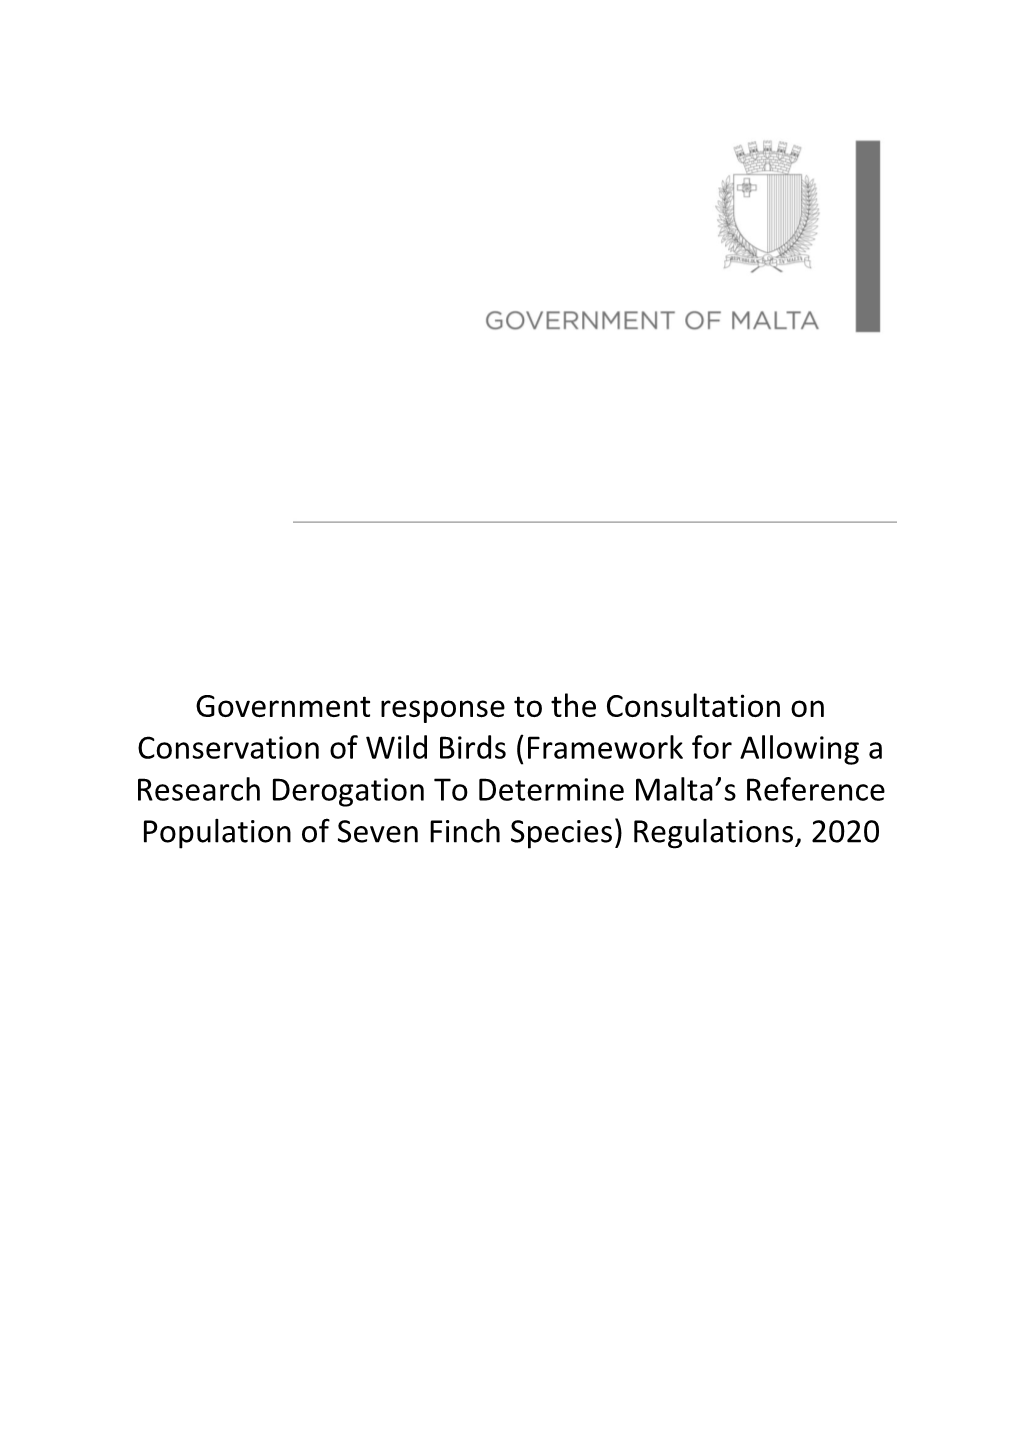 Public Consultation Outcome Report.Pdf